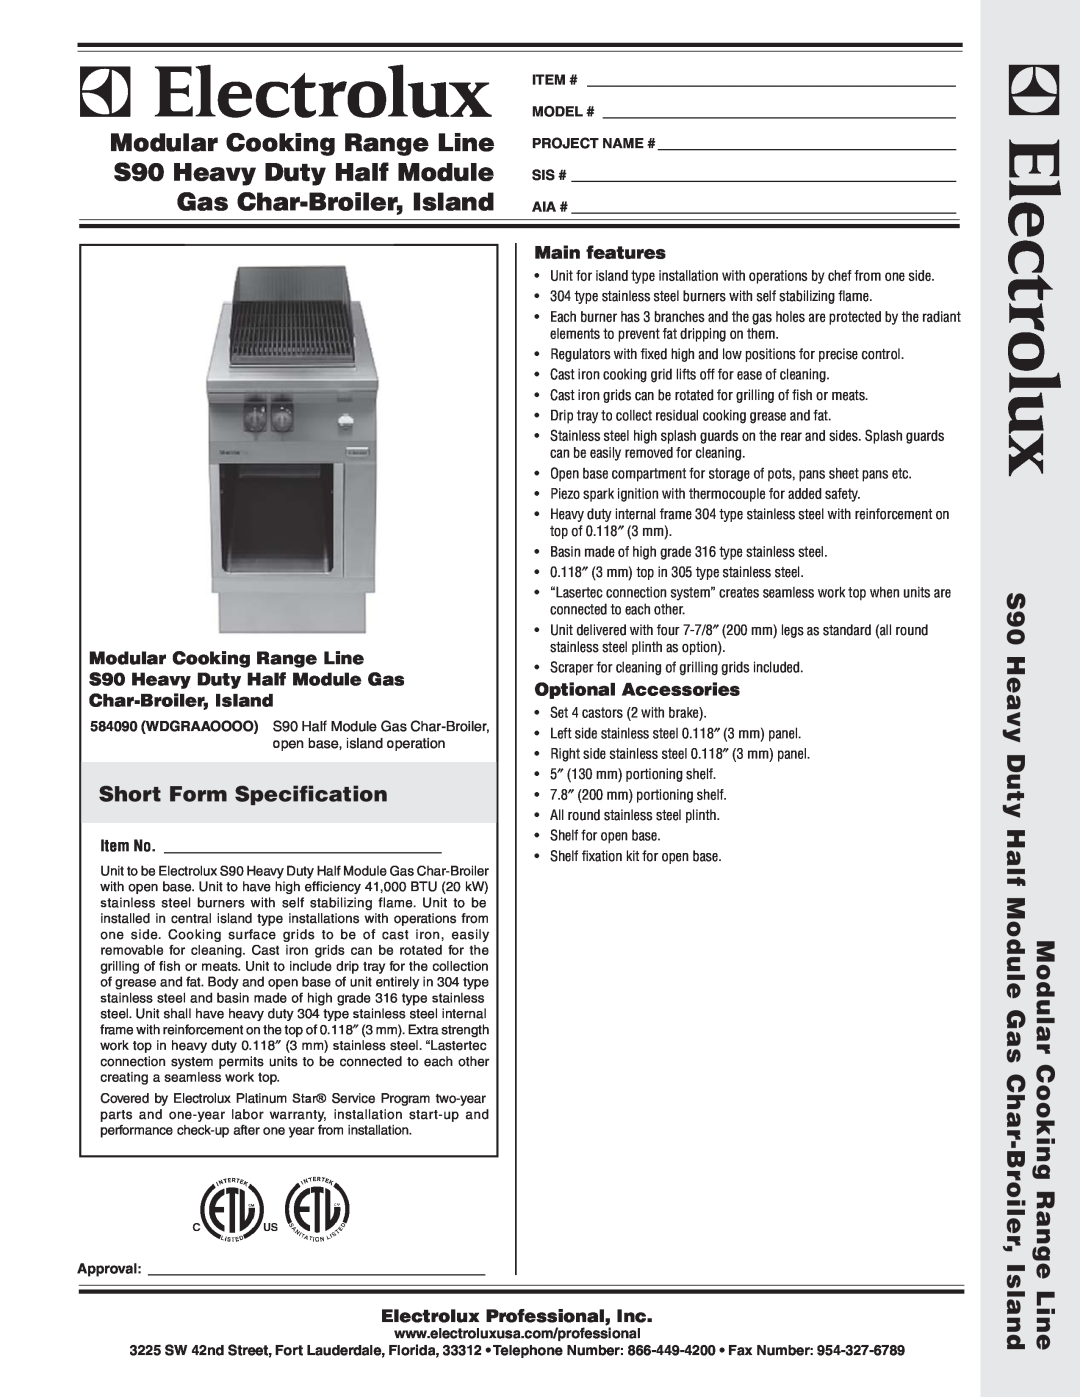 Electrolux 584090 warranty Short Form Specification, Modular Cooking Range Line, S90 Heavy Duty Half Module Gas 